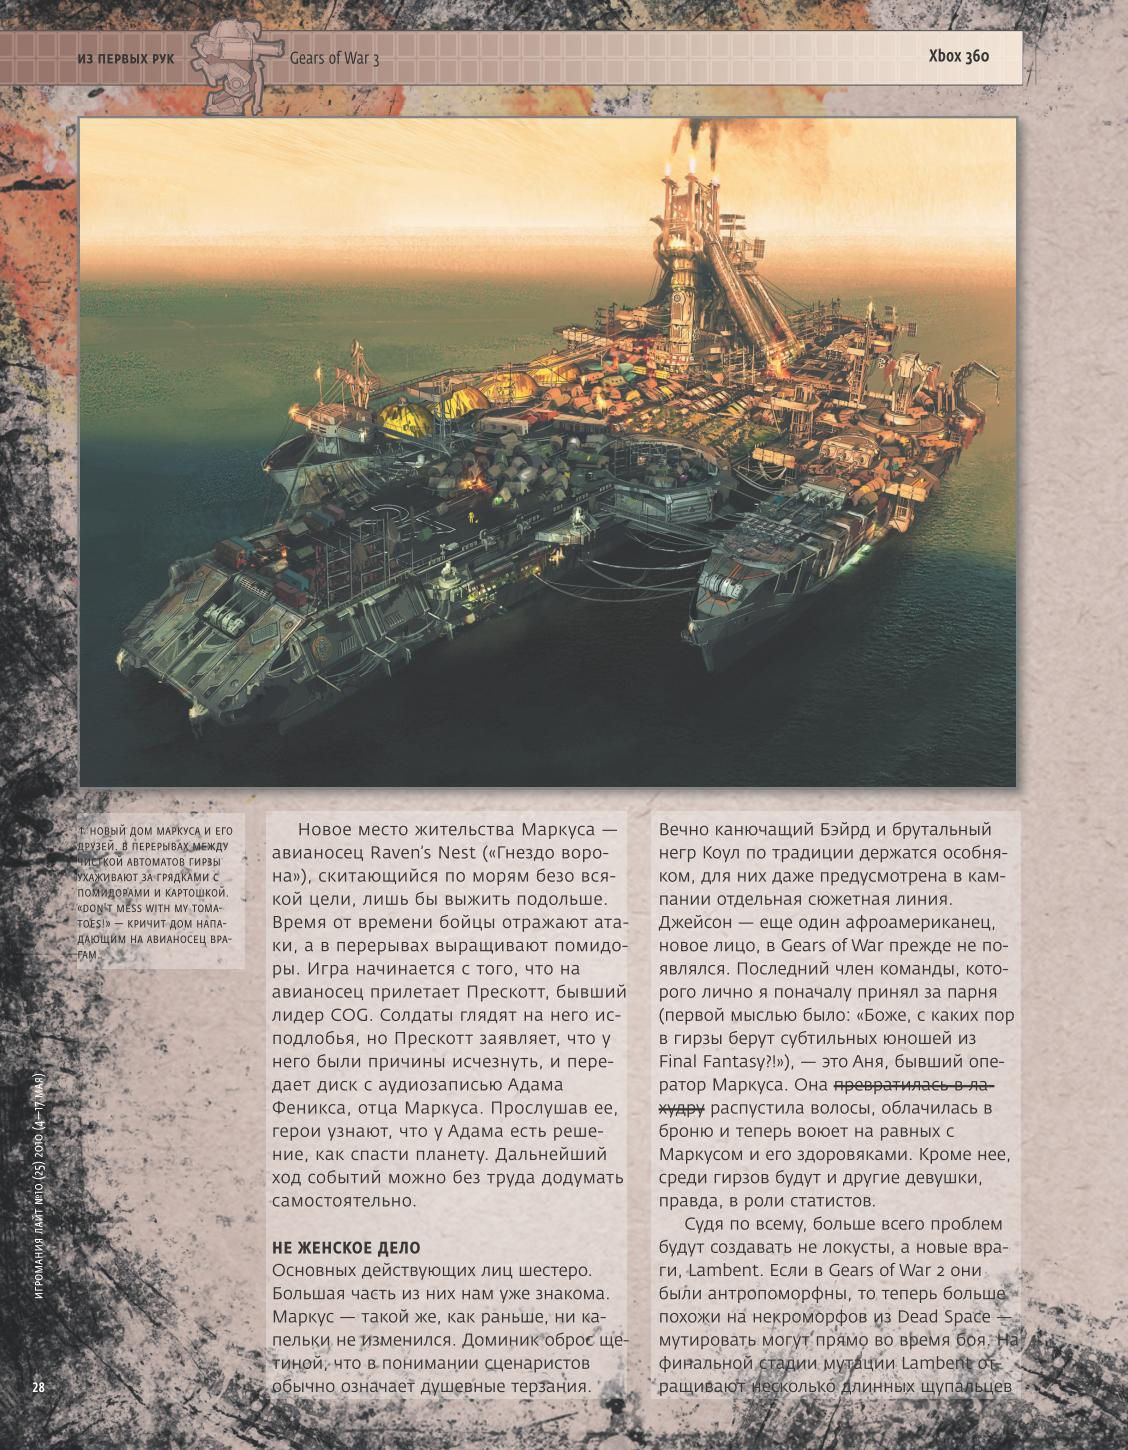 Gears of War 3 - Image 4